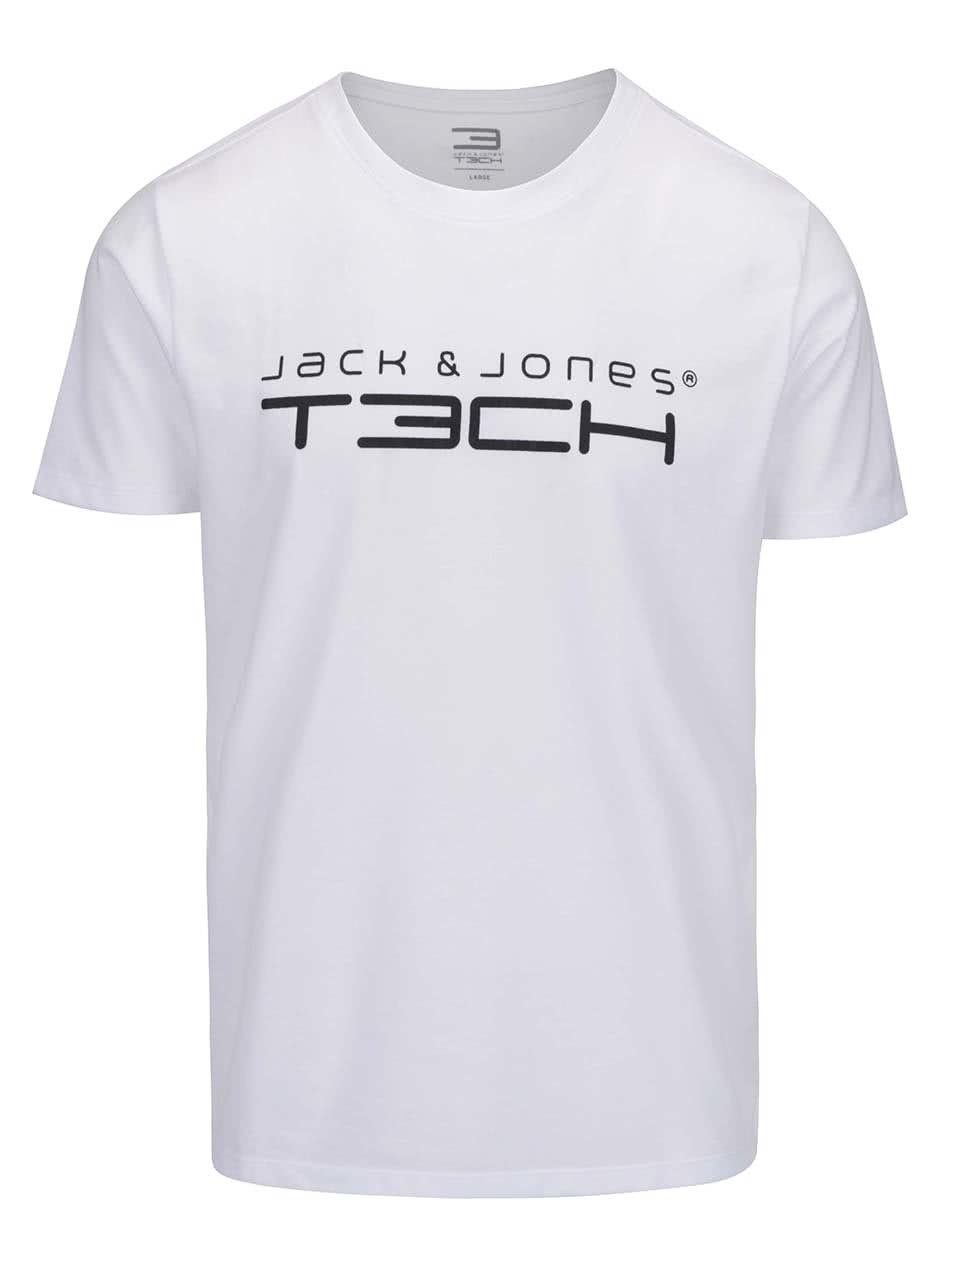 Bílé triko s nápisem Jack & Jones Foam